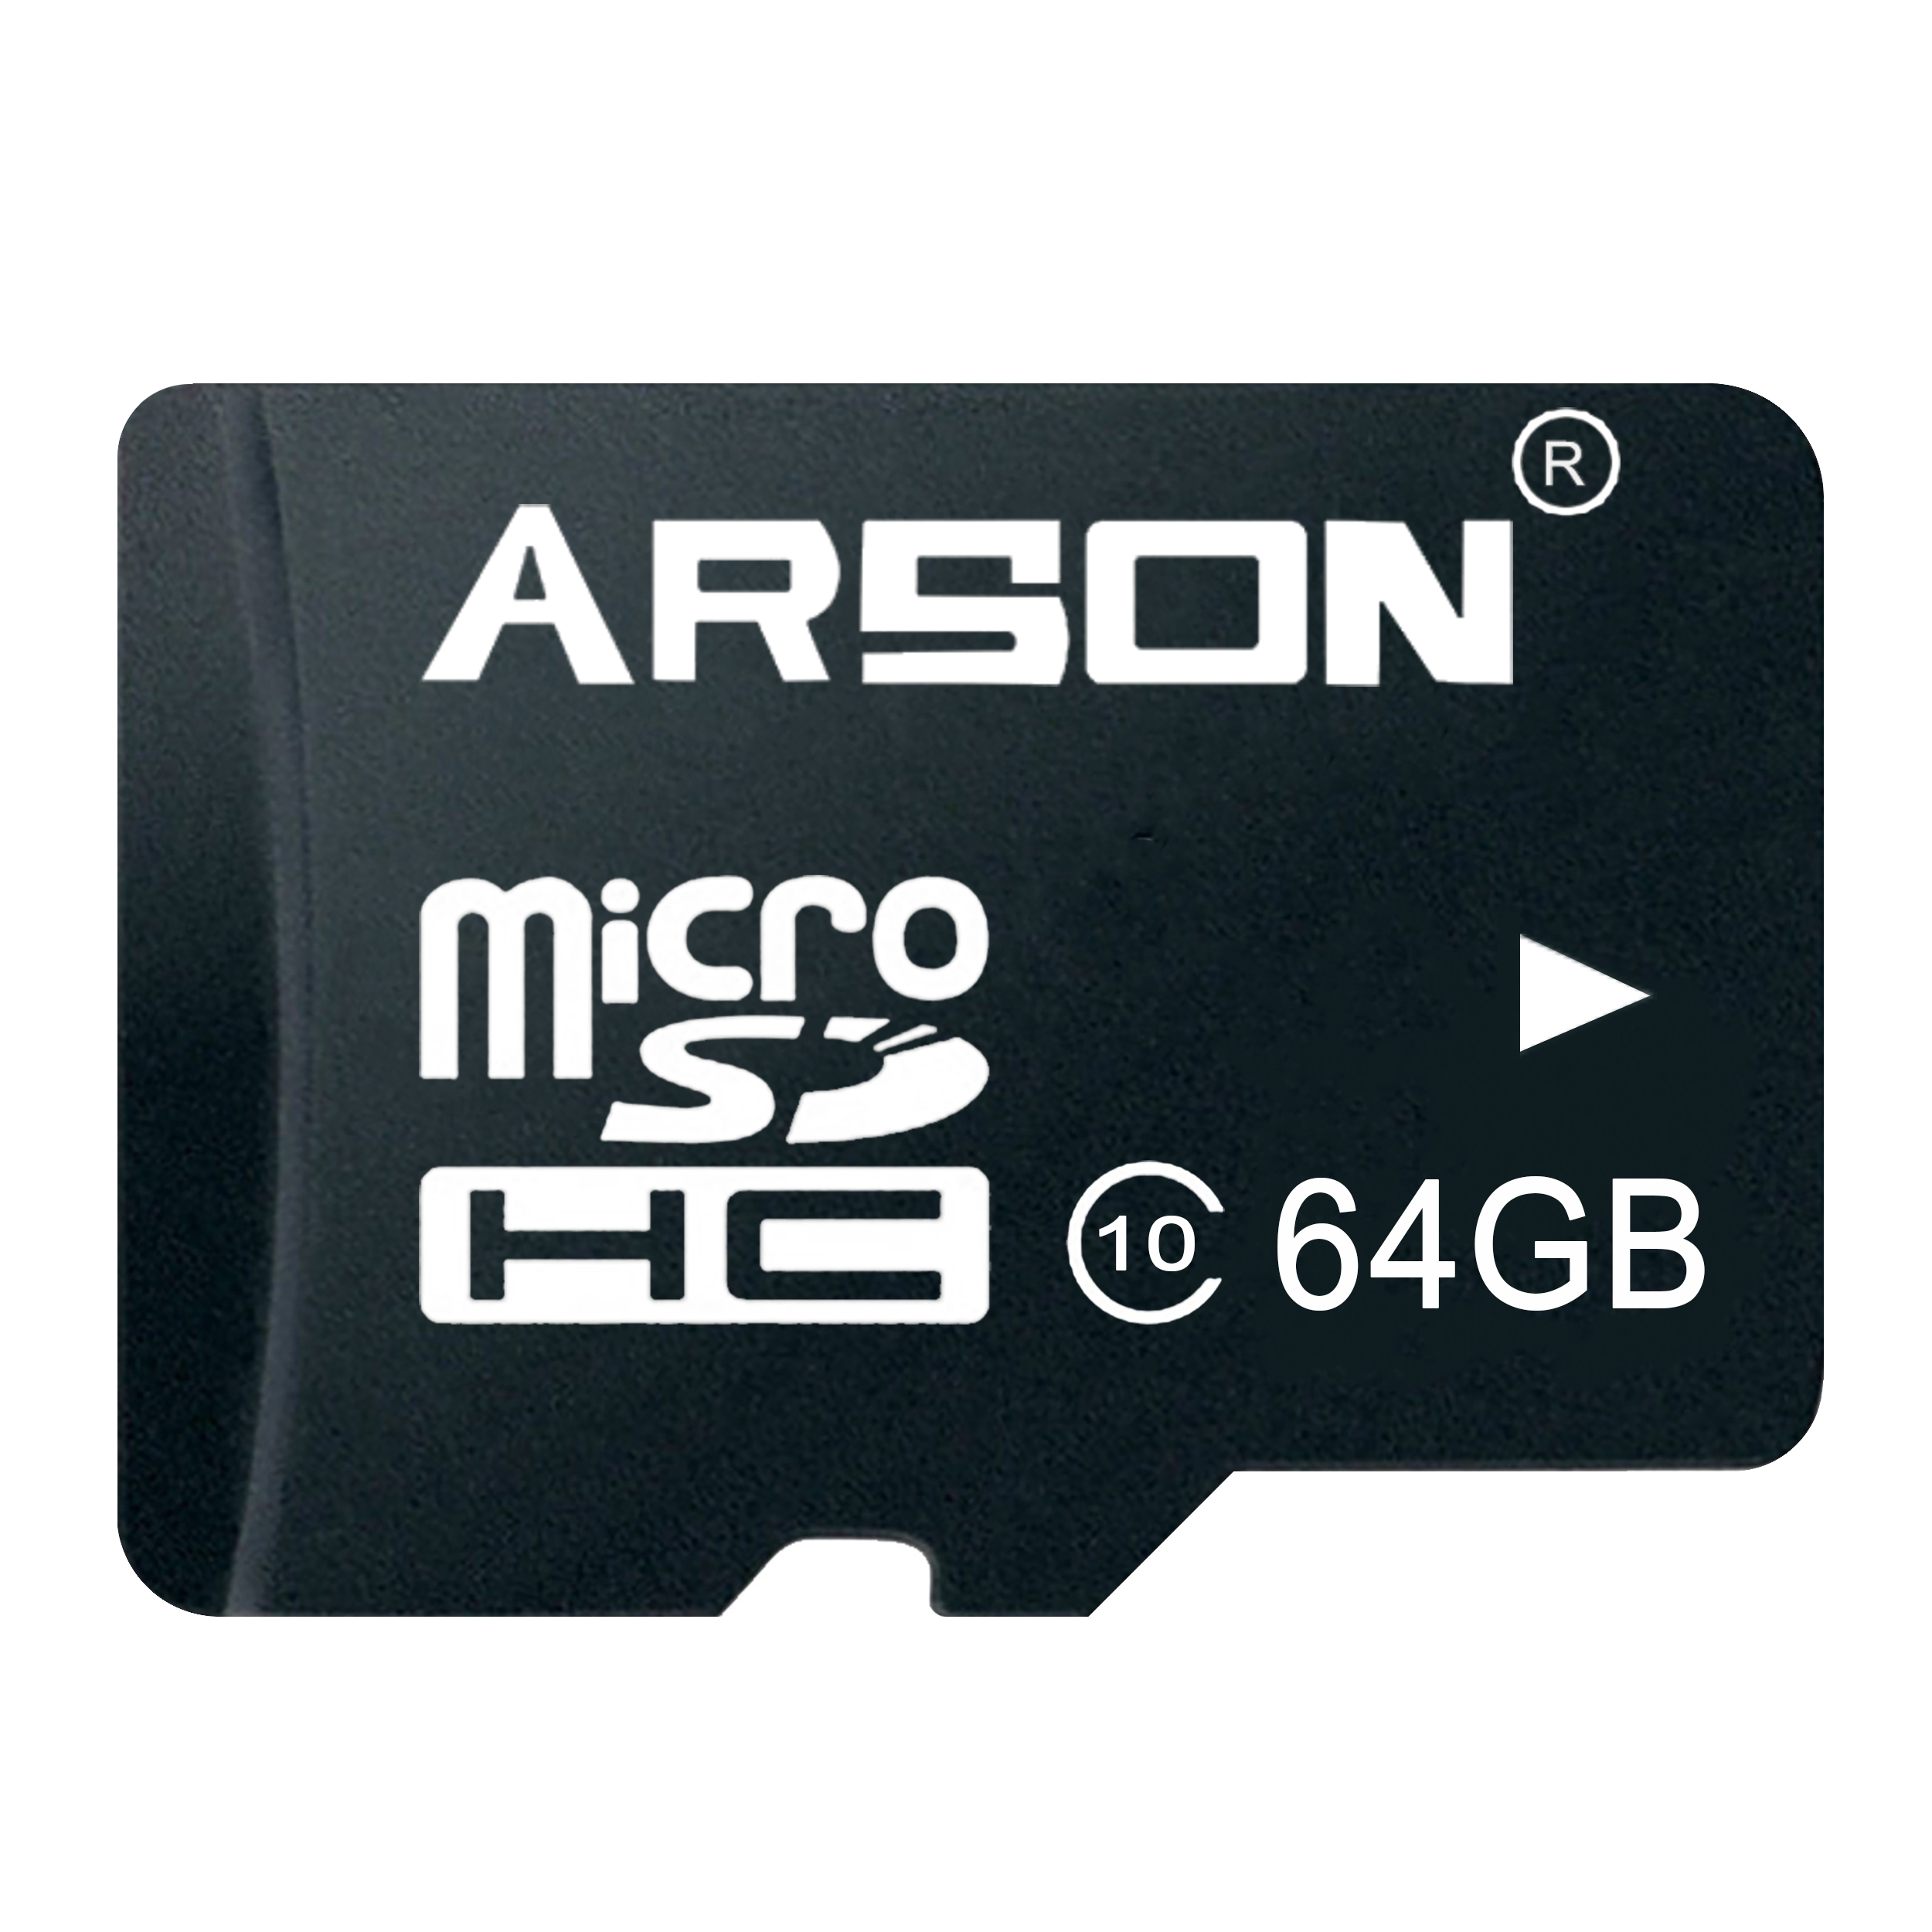 کارت حافظه microSDHC آرسون مدل AM-2164 کلاس 10 استاندارد U1 سرعت 80MBps ظرفیت 64 گیگابایت